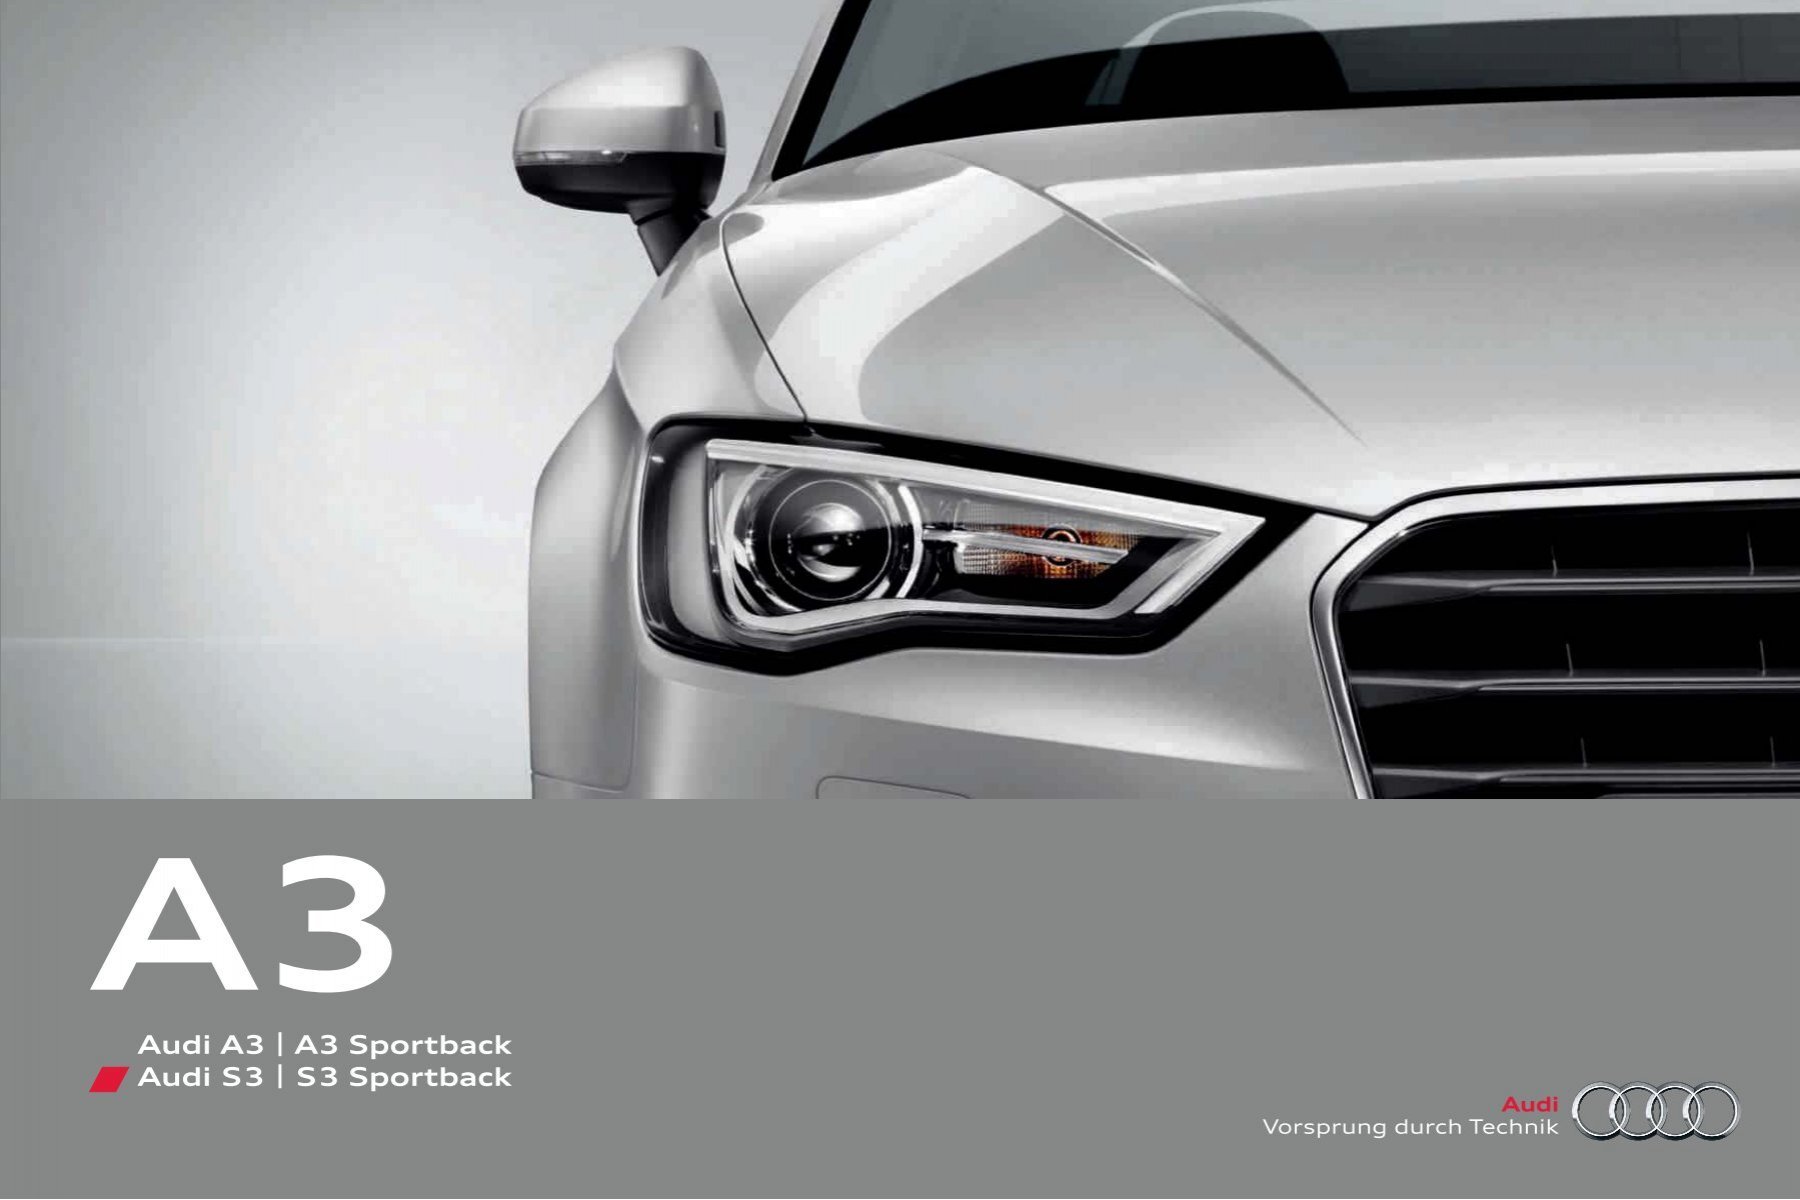 5 sitze Auto Angepasst Auto Sitzbezüge Produkte Für Audi q3 2013